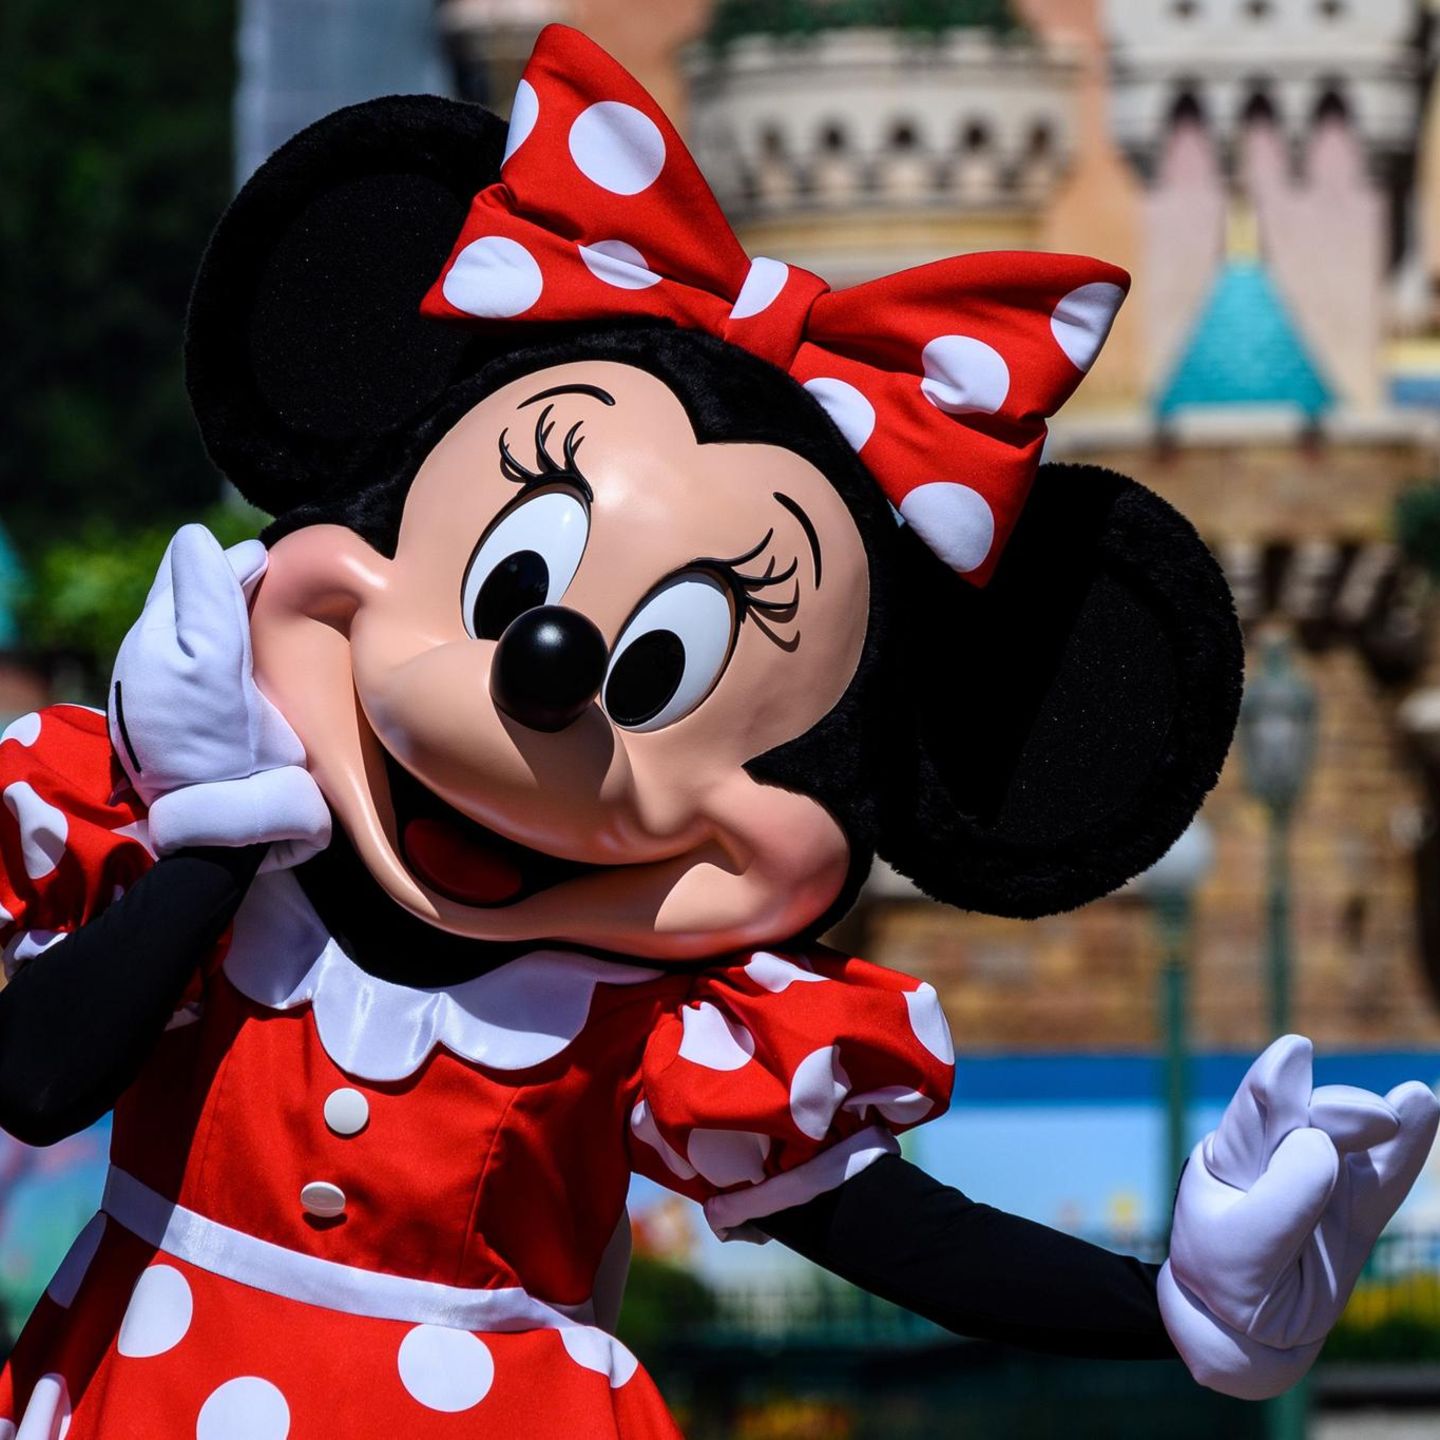 Nach fast 100 Jahren Kleid trägt Minnie Maus jetzt einen Hosenazug